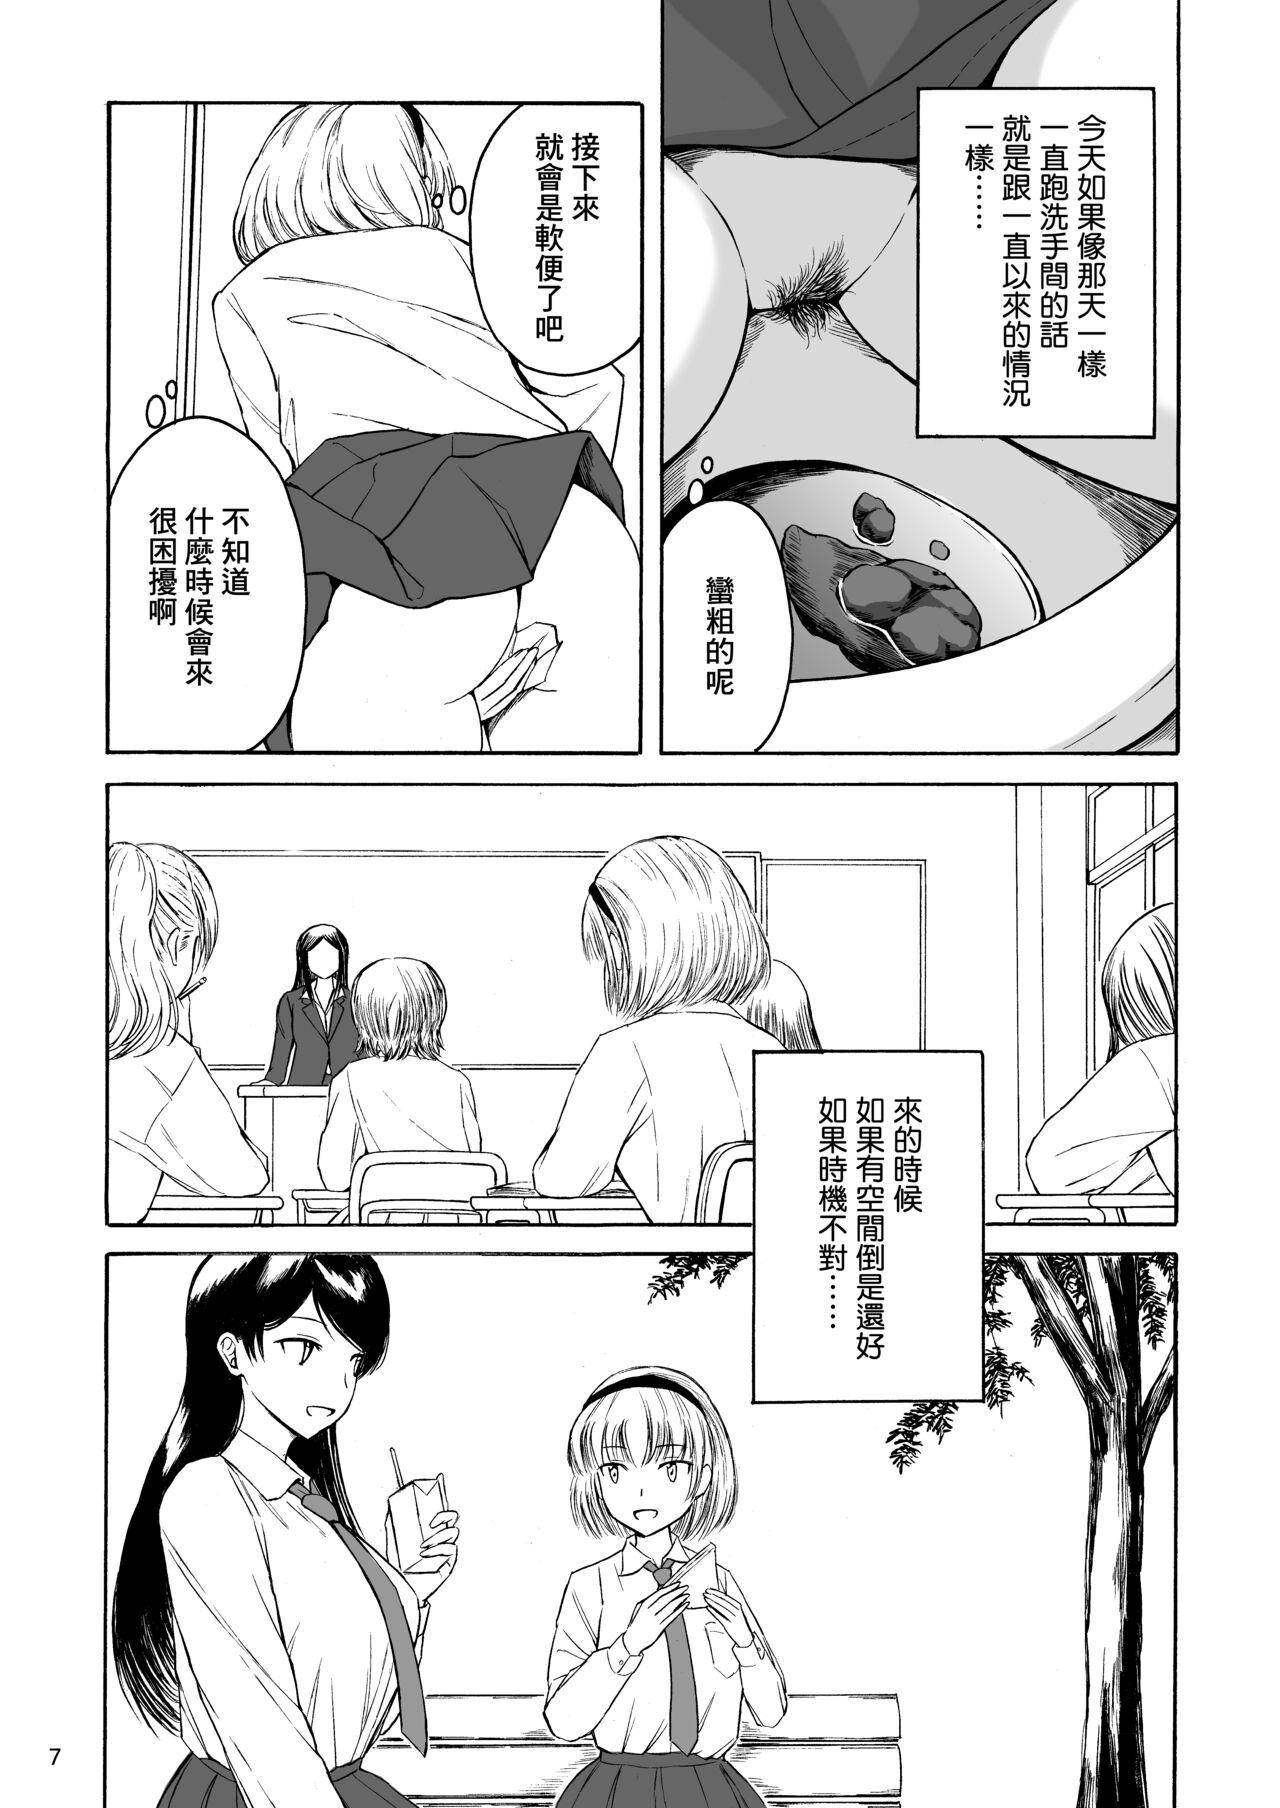 Mamando Haisetsu Shoujo 15 - Original Shemale Porn - Page 7